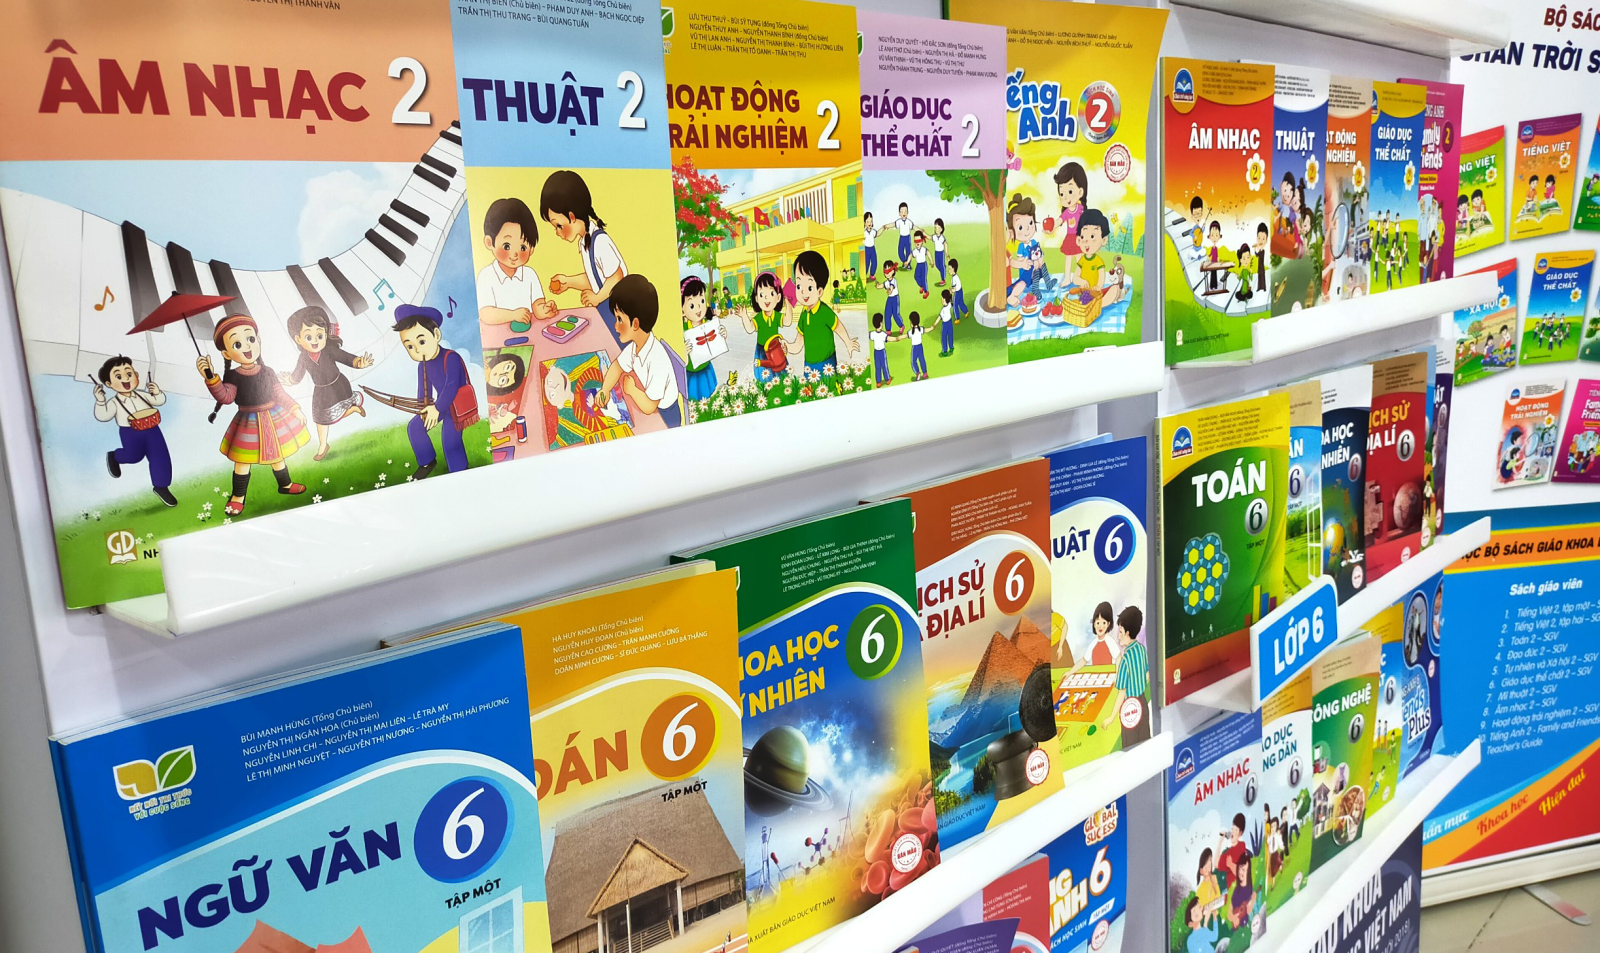 Nhiệm vụ chính của Nhà xuất bản Giáo dục Việt Nam là tổ chức biên tập, biên soạn, in và phát hành sách giáo khoa và các sản phẩm giáo dục phục vụ giảng dạy và học tập trên toàn quốc. 